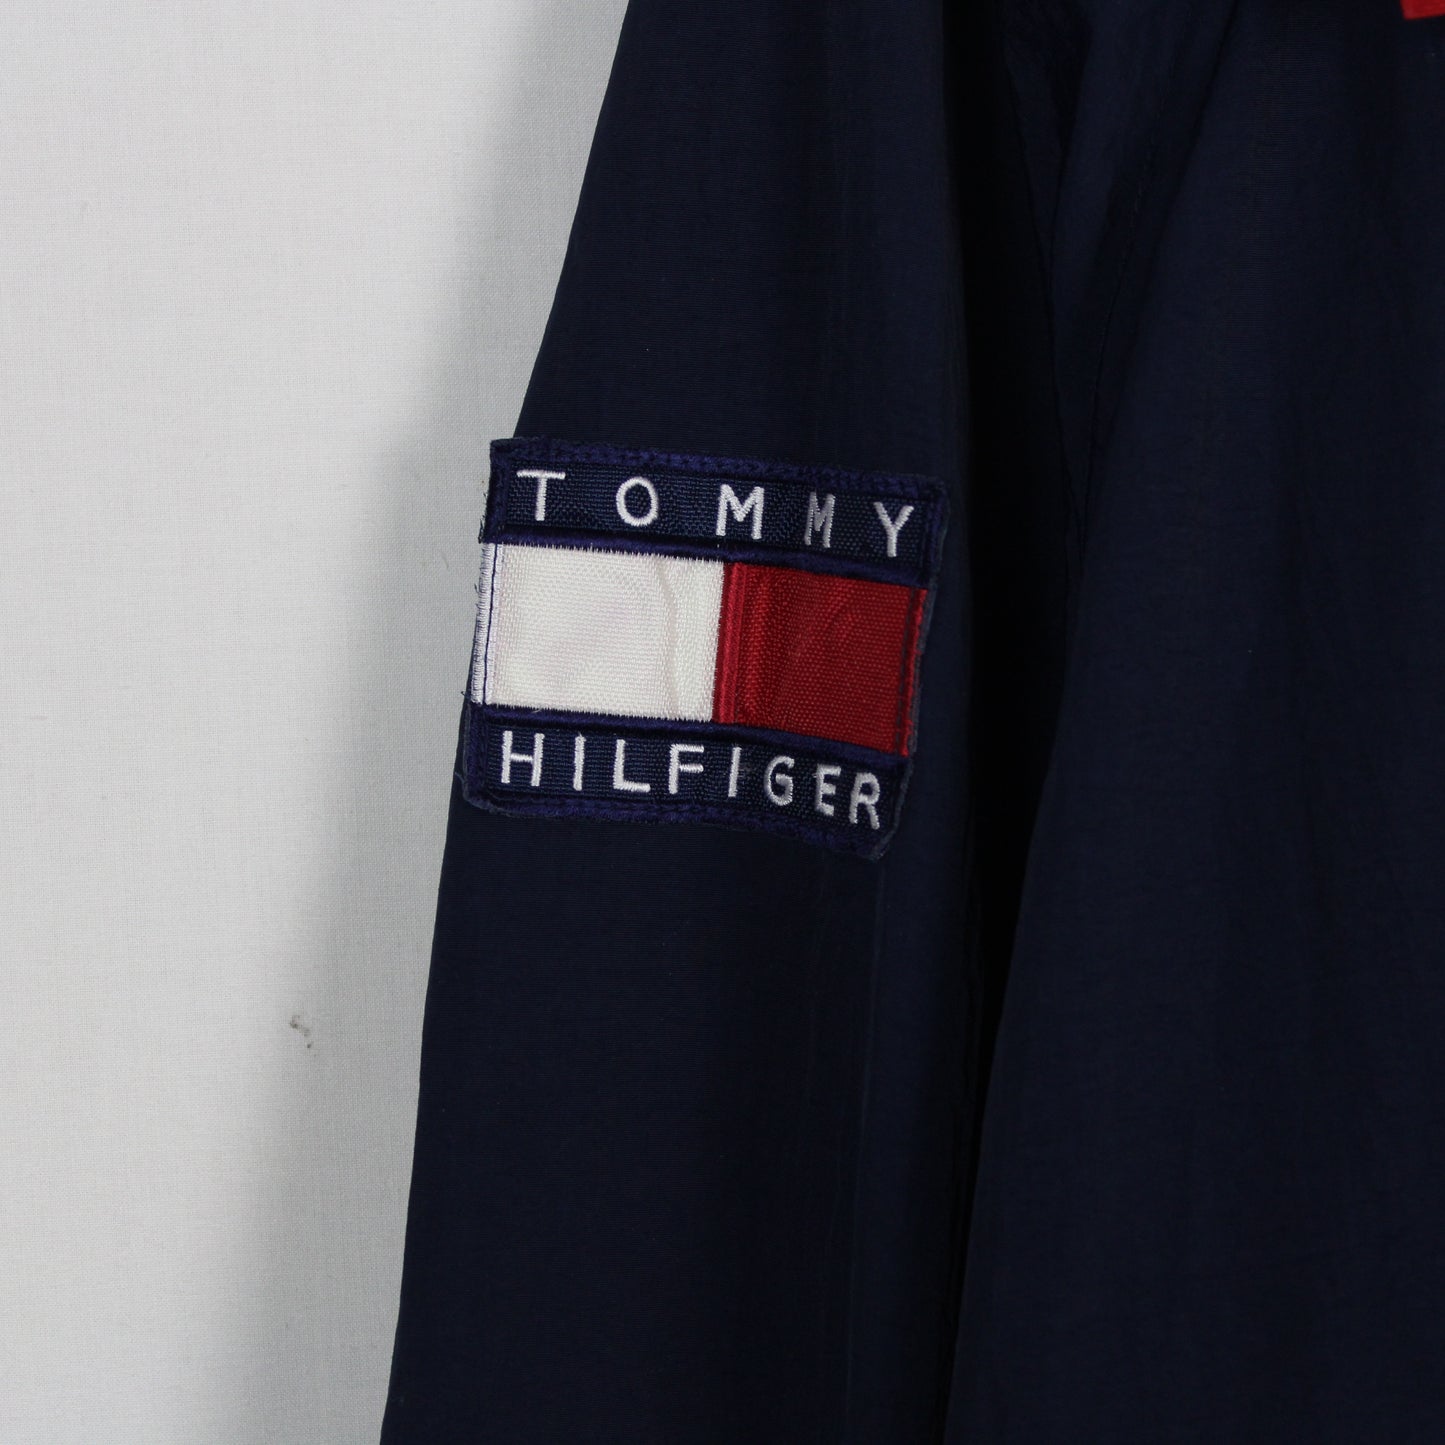 Vintage Tommy Hilfiger Sailing Jacket - L